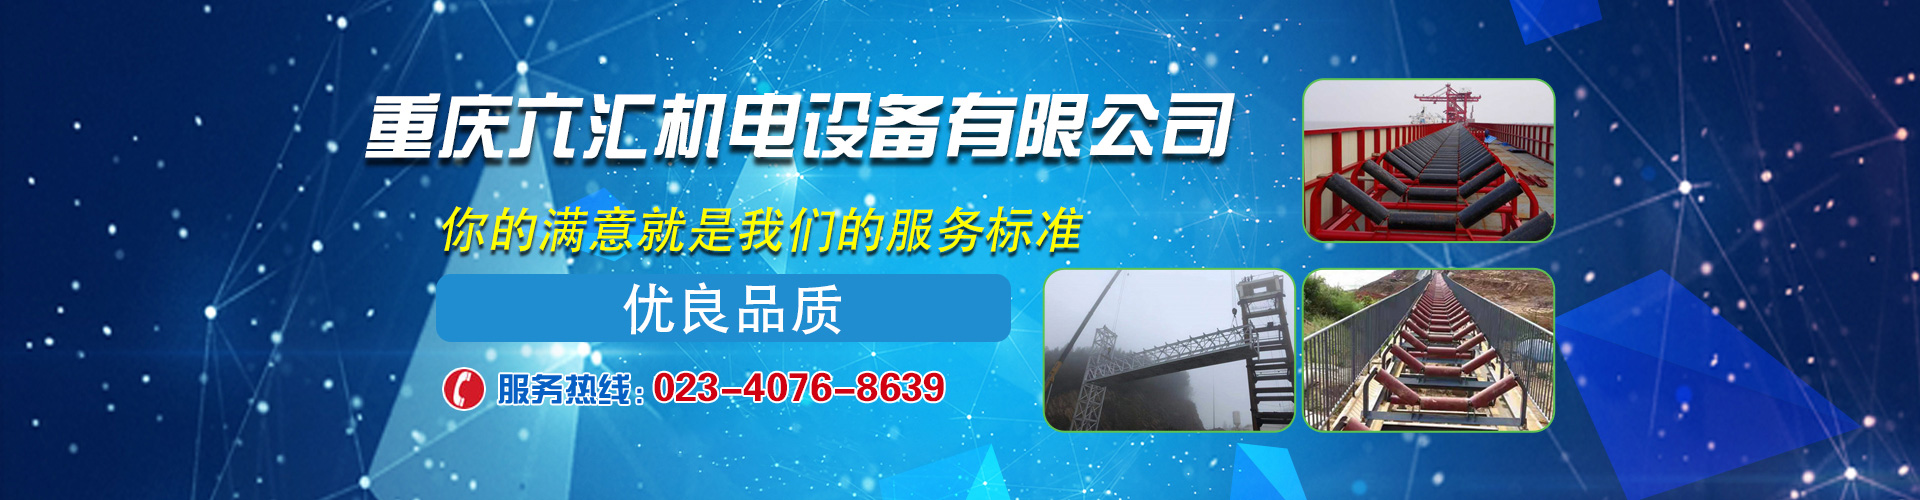 重庆六汇机电设备有限公司